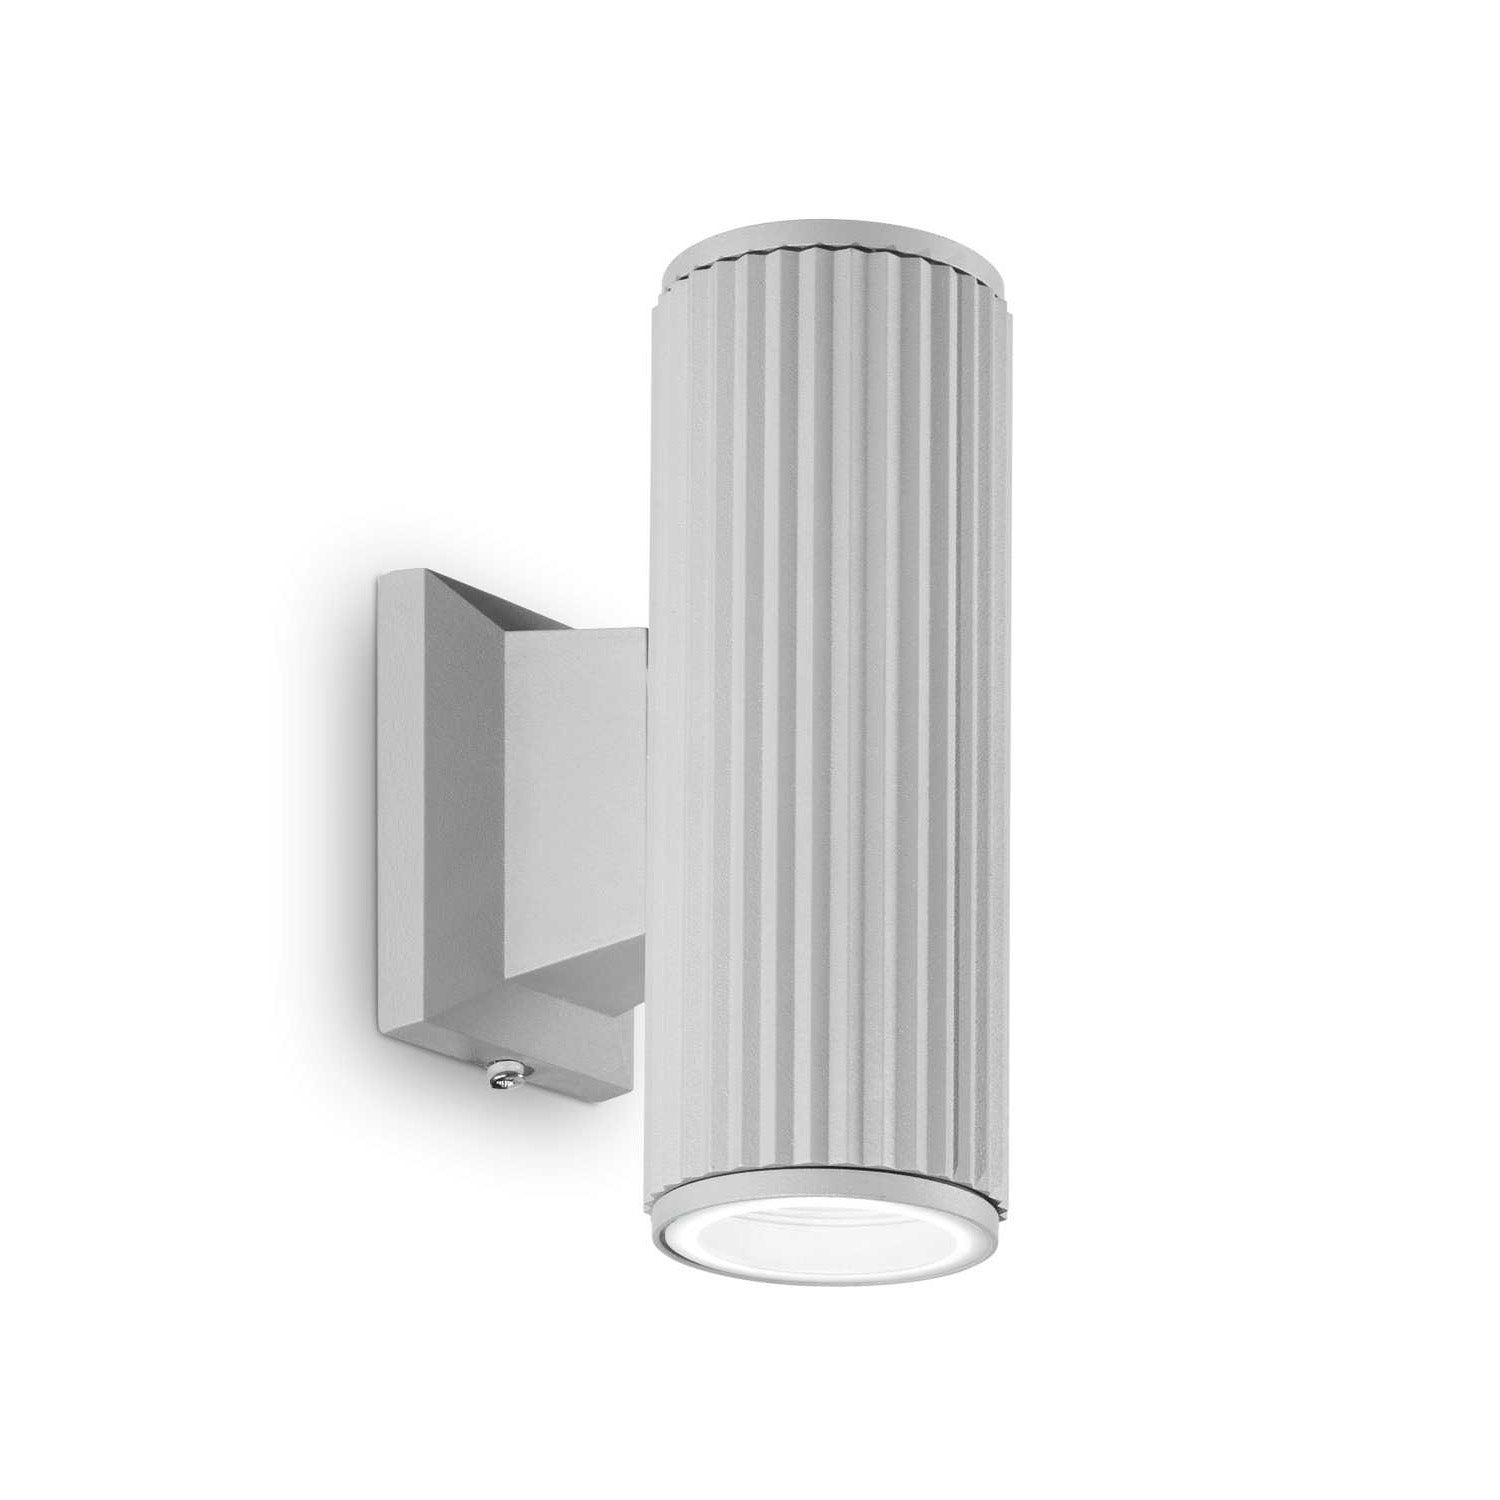 BASE - Modern exterior aluminum wall light